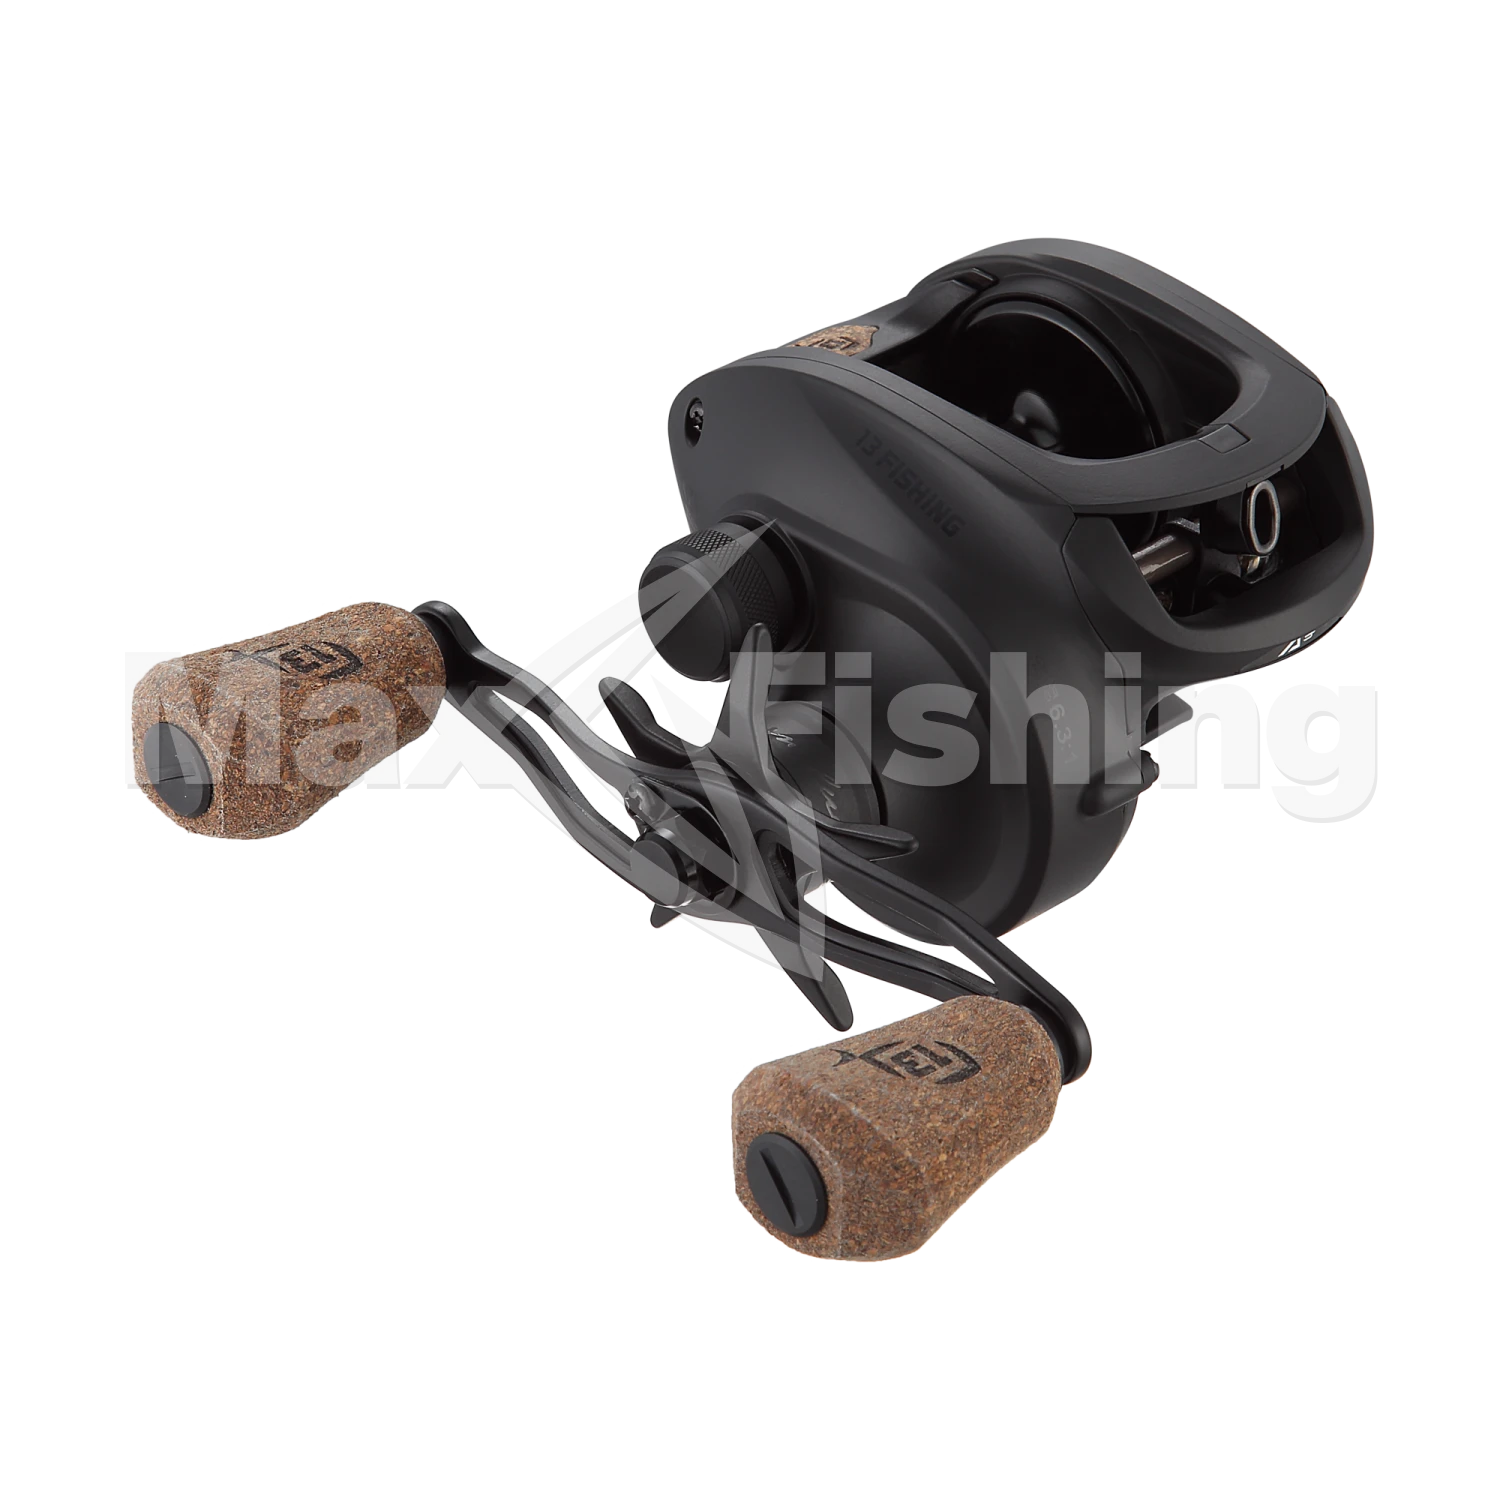 Катушка мультипликаторная 13 Fishing Concept A3 Casting Reel 6.3-RH